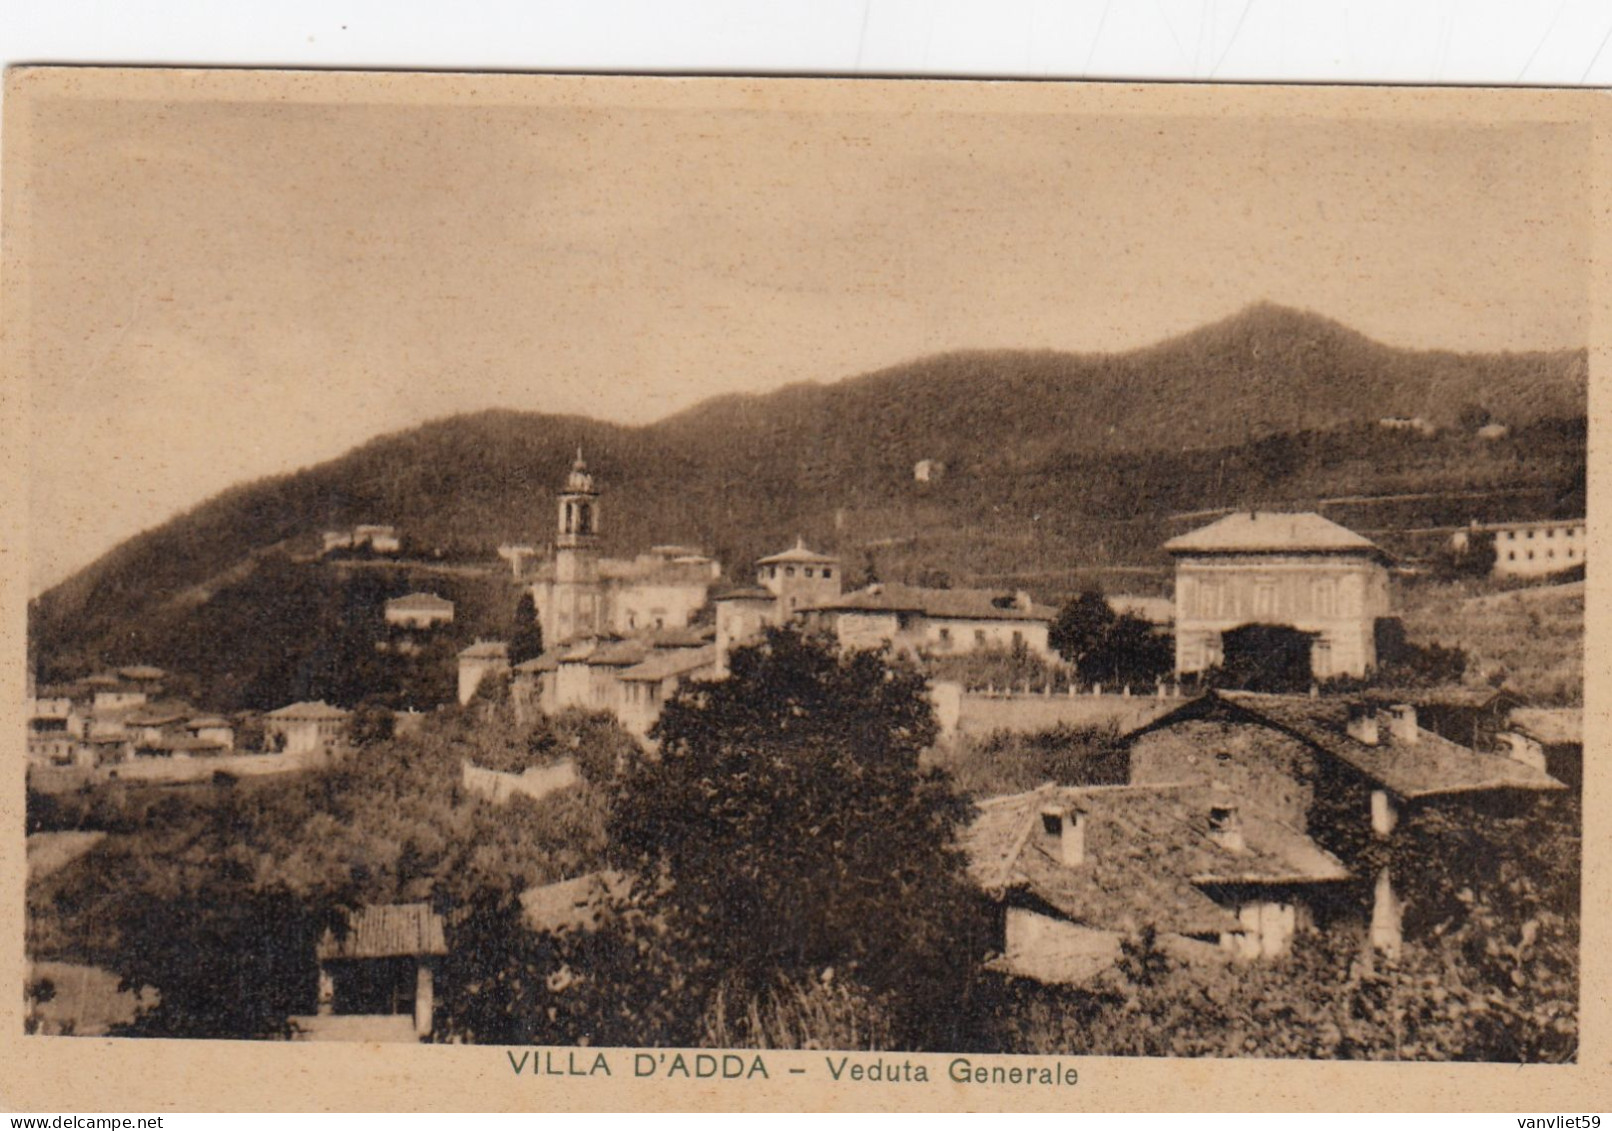 VILLA D'ADDDA-BERGAMO-VEDUTA GENERALE- CARTOLINA VIAGGIATA IL 28-11-1935 - Bergamo